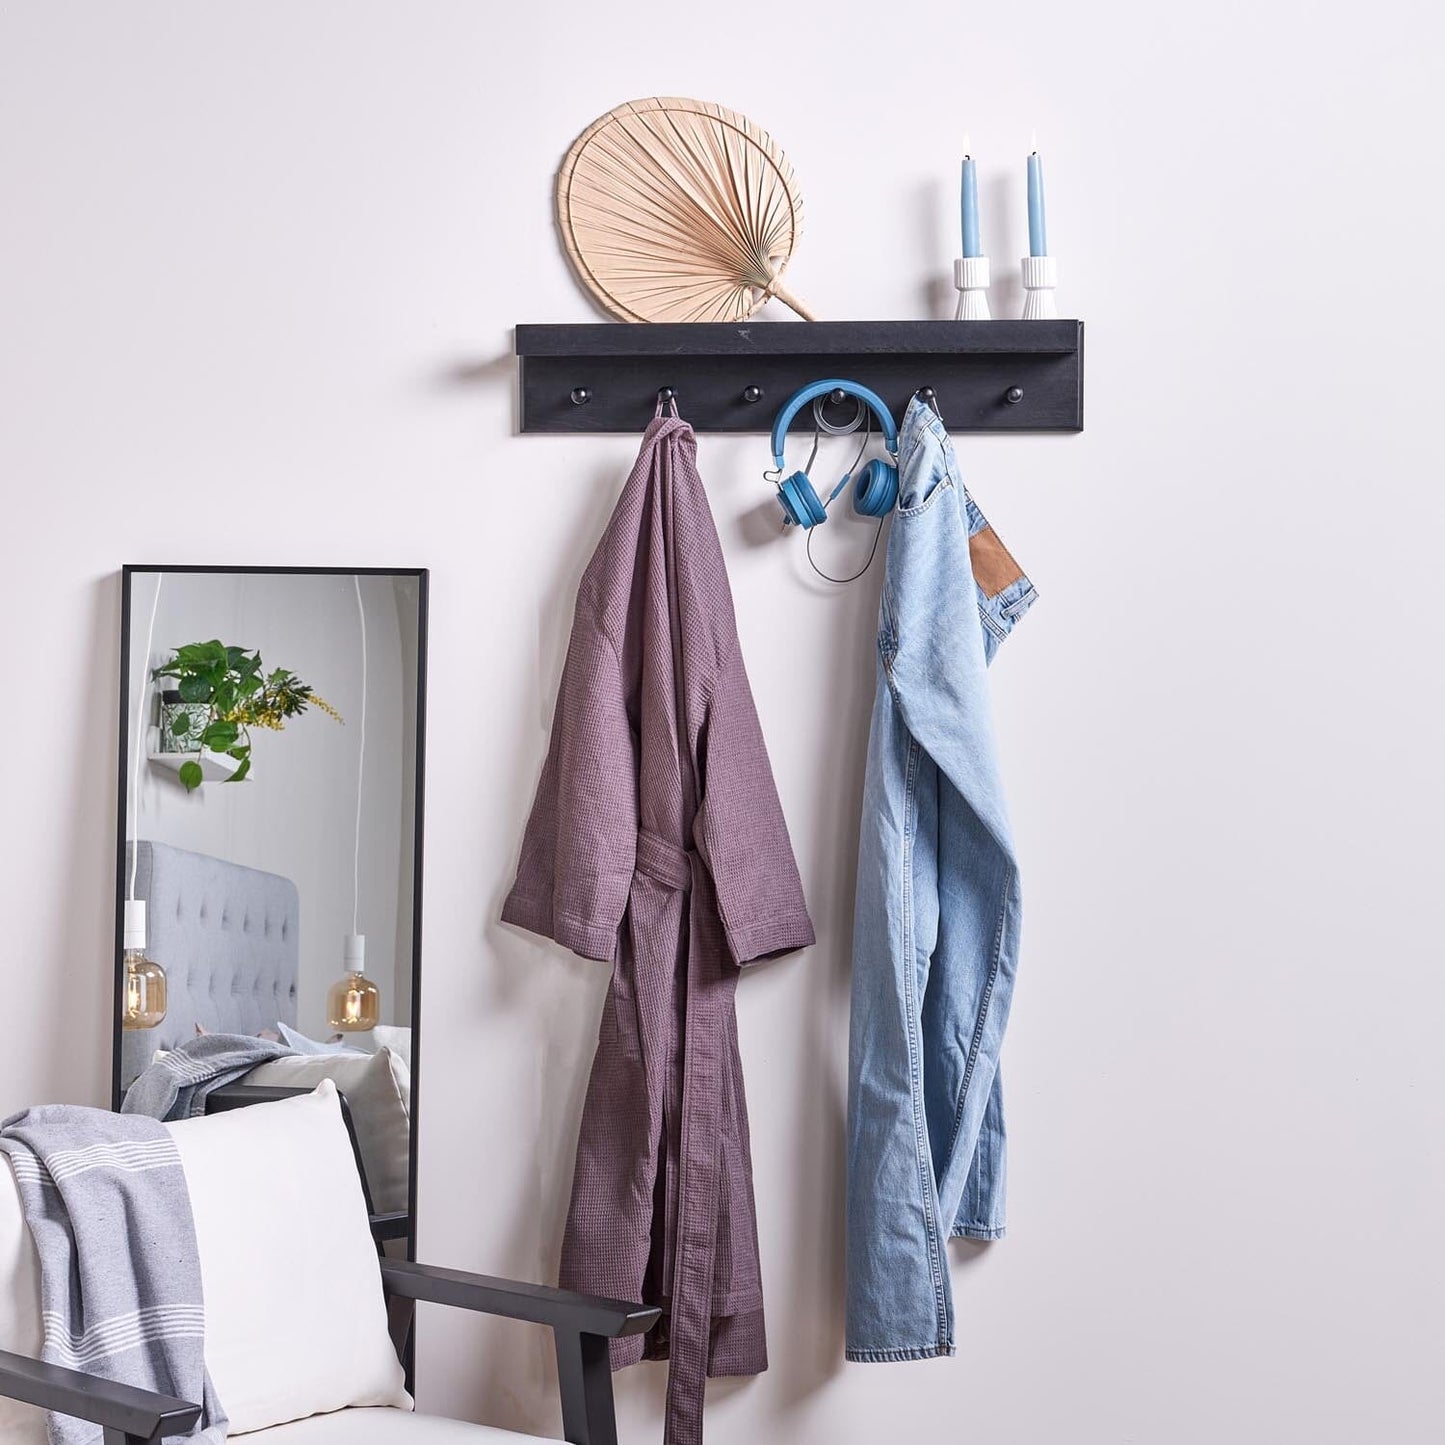 Wooden coat rack with shelf - Laura James